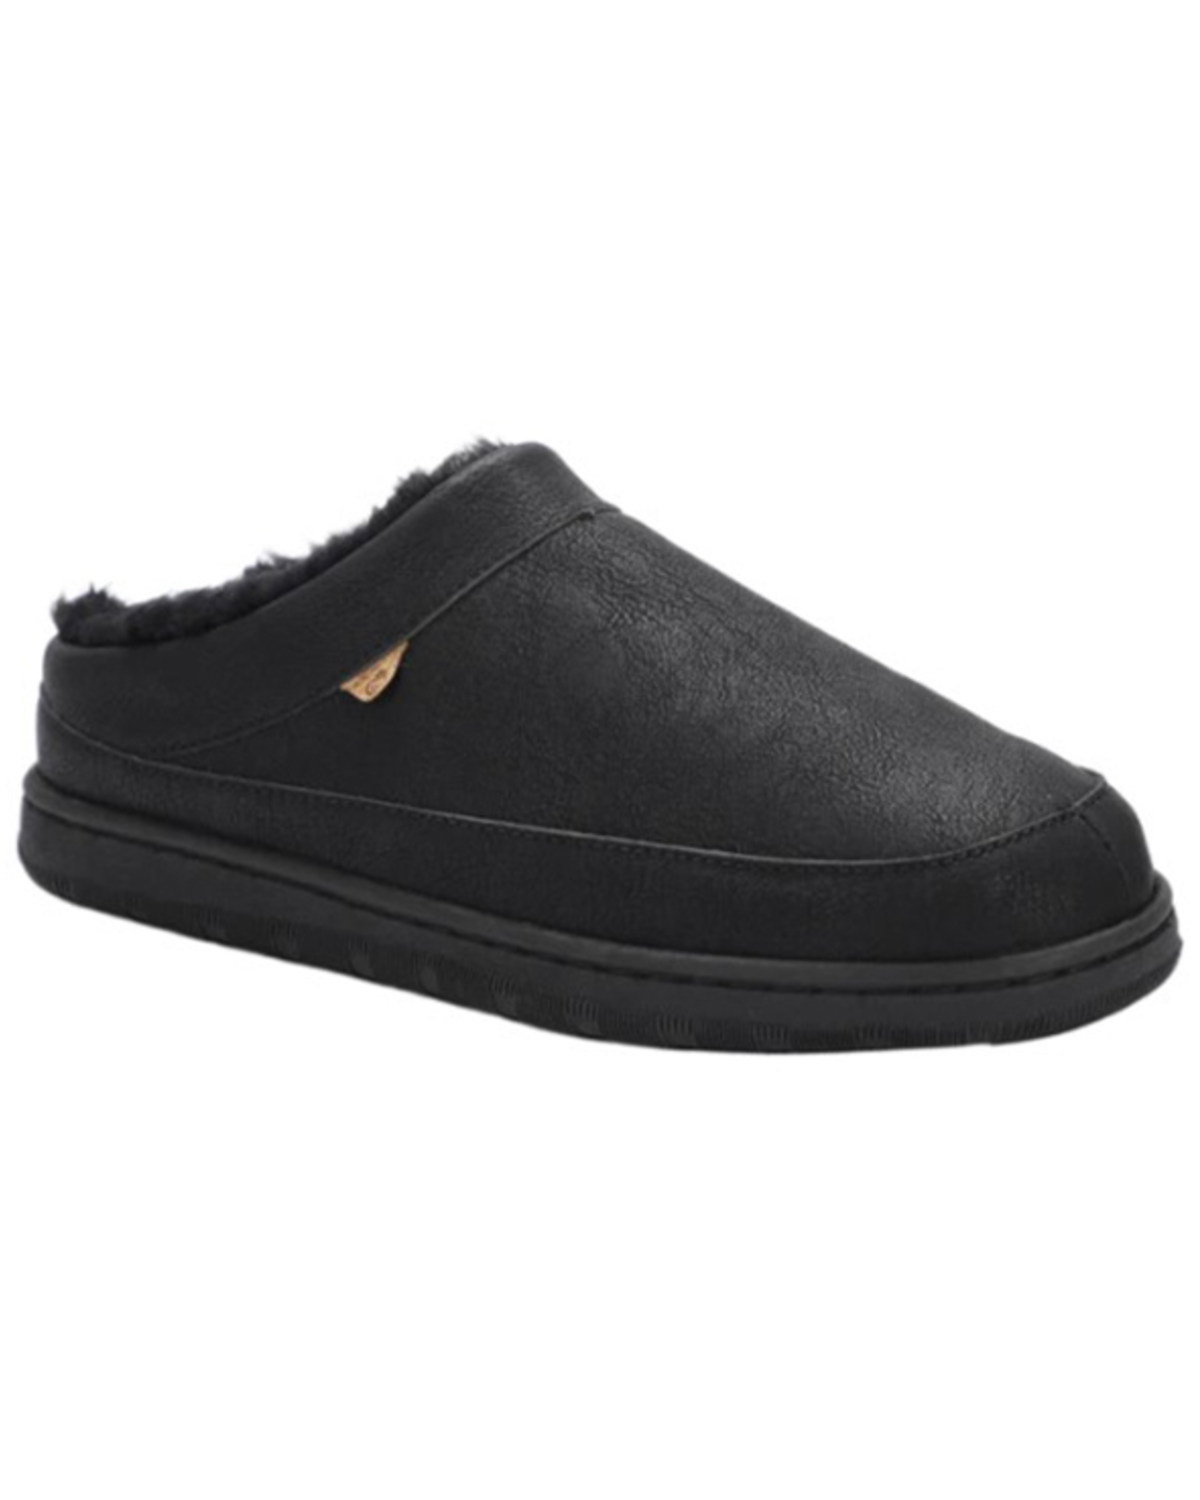 Lamo Footwear Men's Julian Clog II Slippers